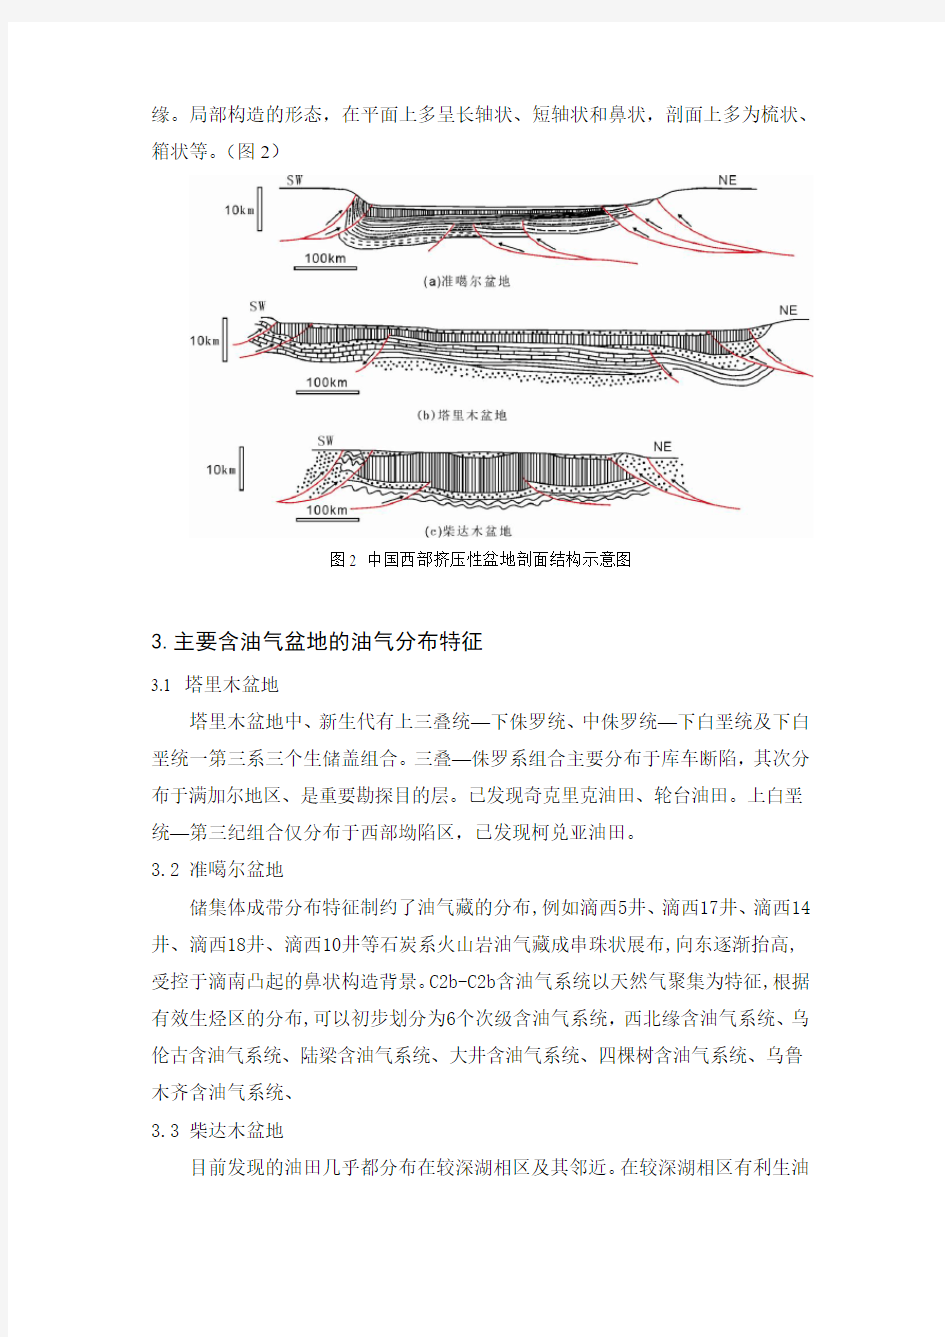 中国西部沉积盆地特点与油气富集规律(简)